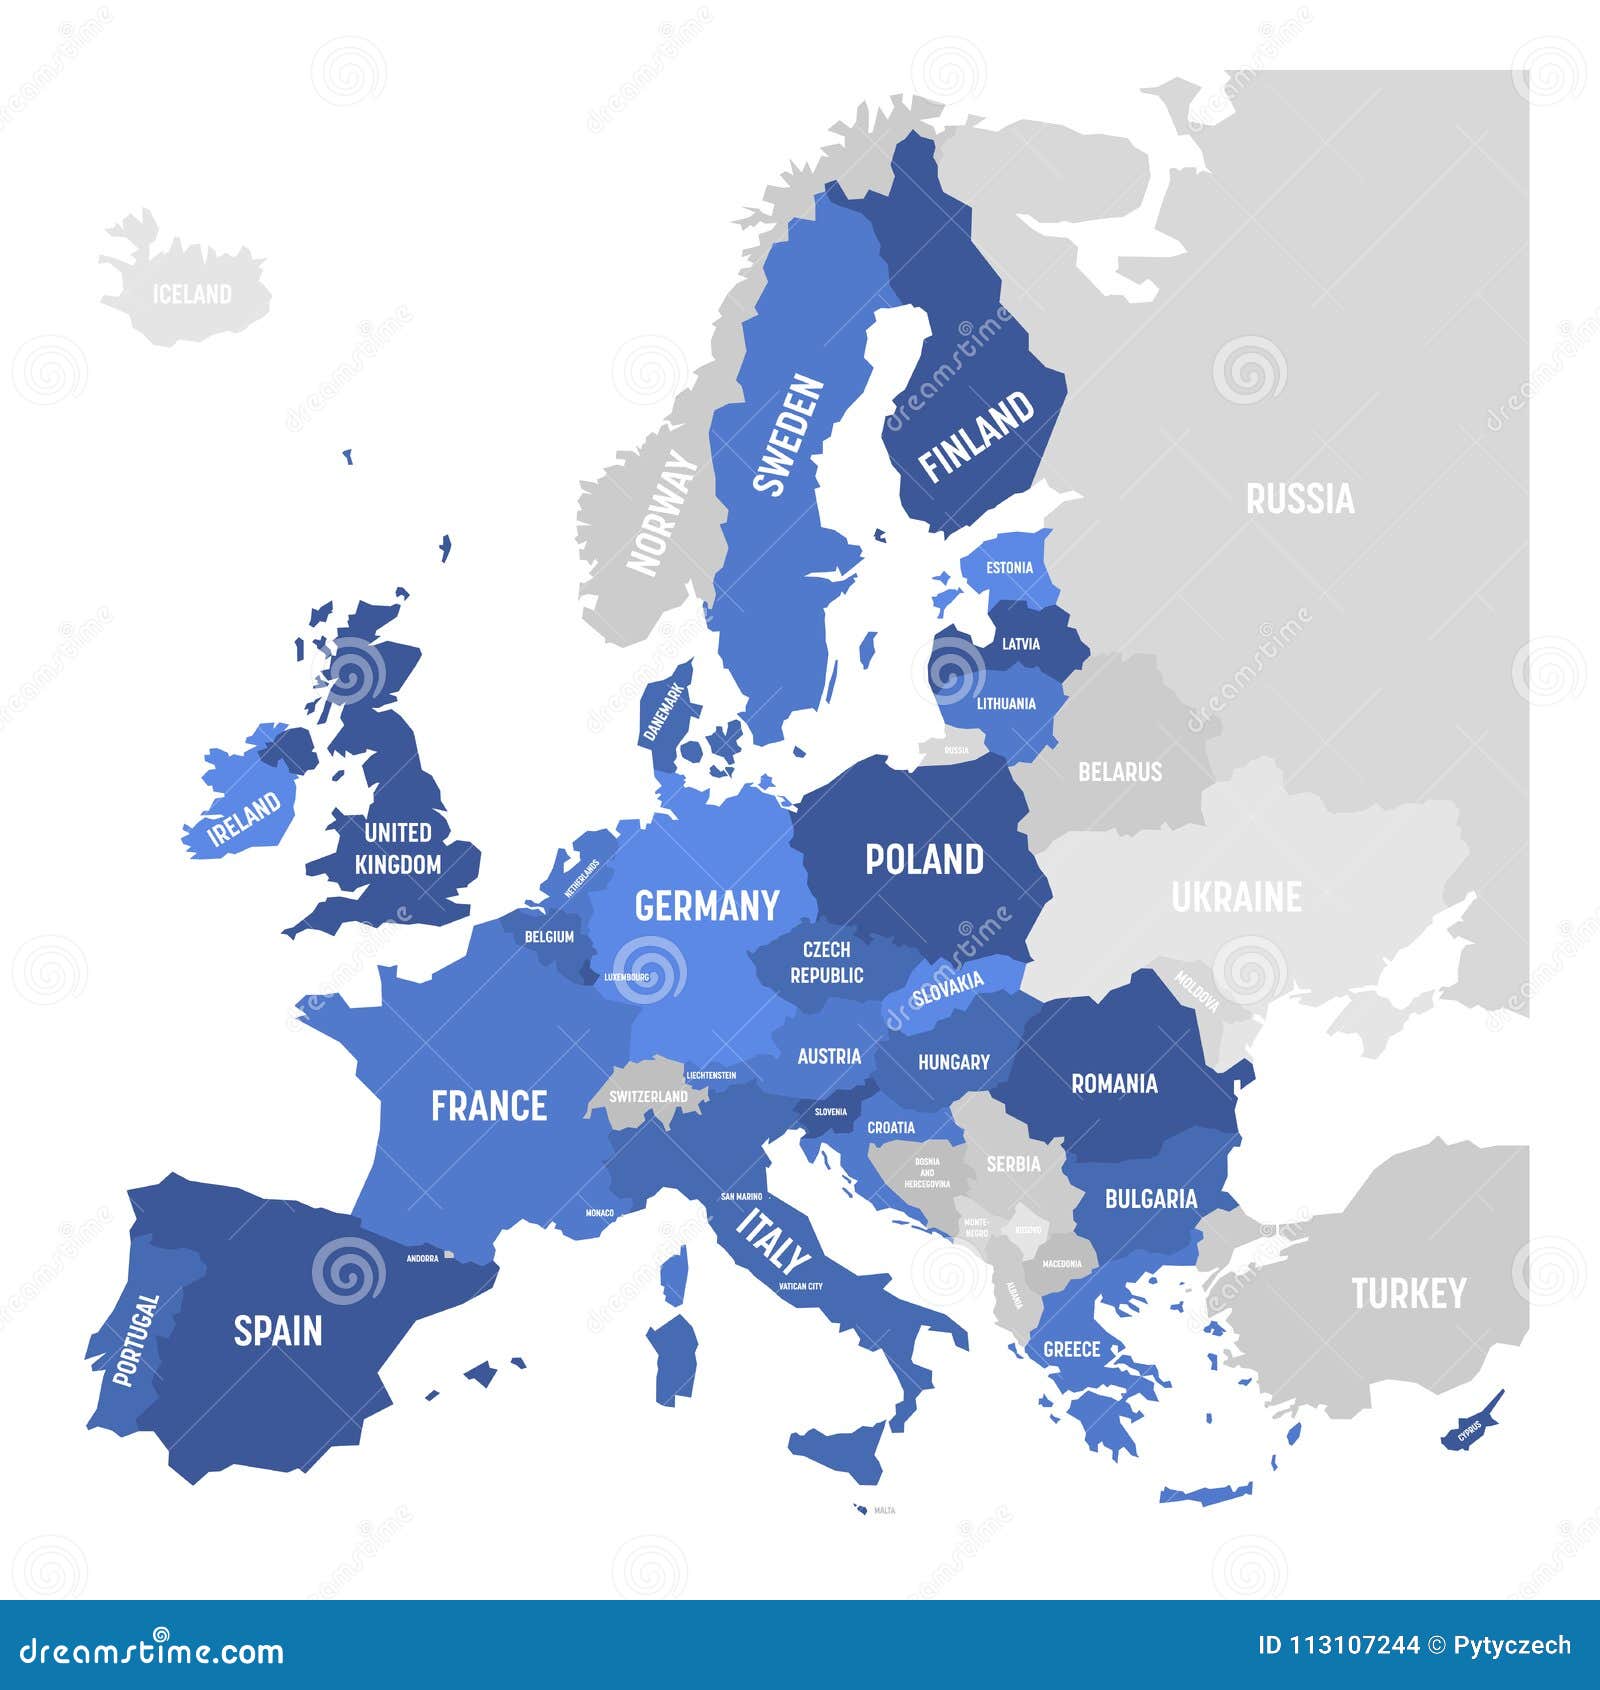 Bandeira da união europeia (ue) e adesão no fundo do mapa da